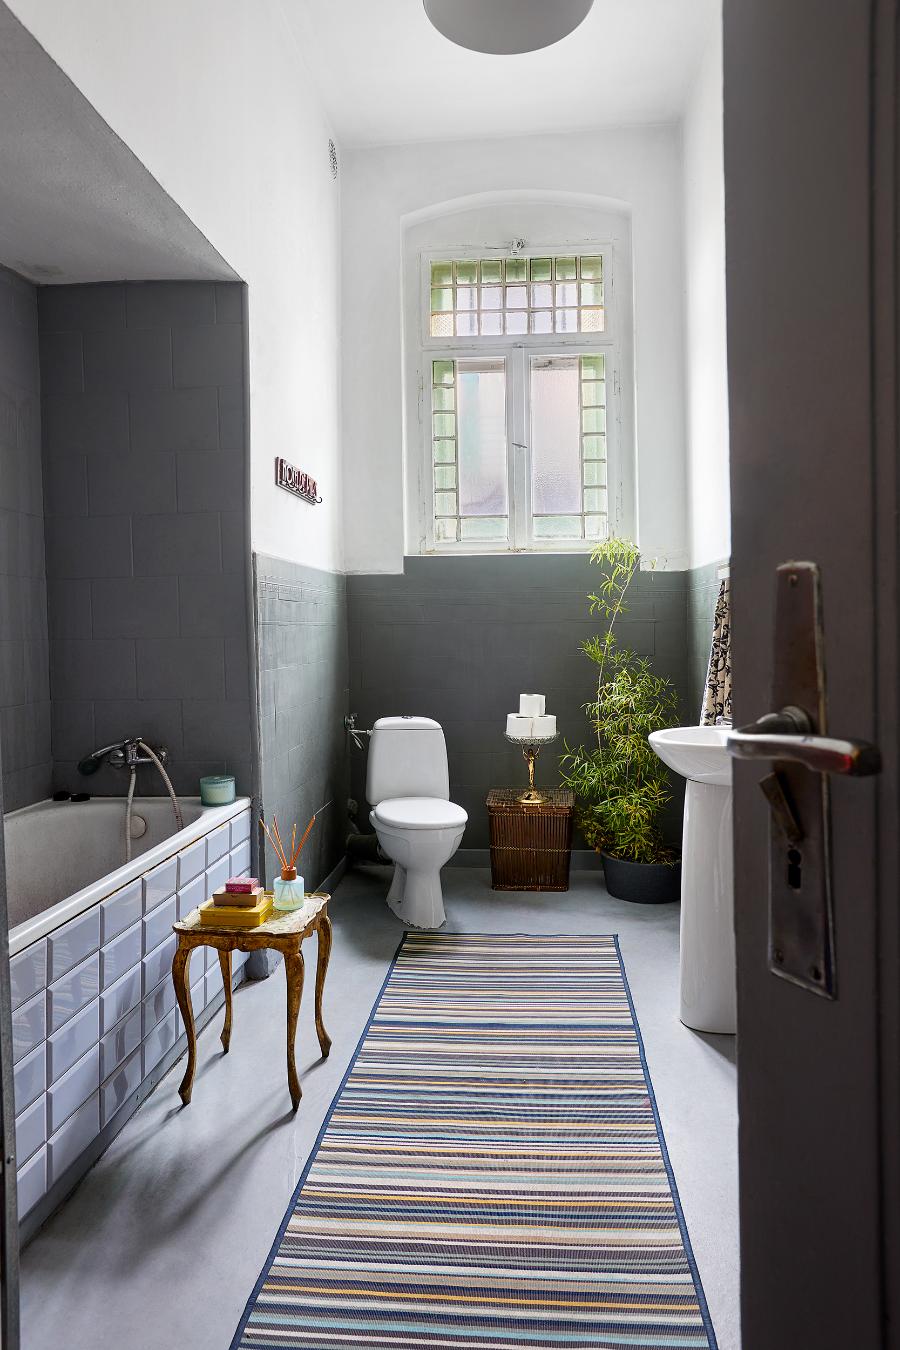 W tym mieszkaniu łazienka, choć niezwykle stylowa, służy przede wszystkim do mycia pędzli i farbowania ubrań. (Fot. Proksaphotography.com)